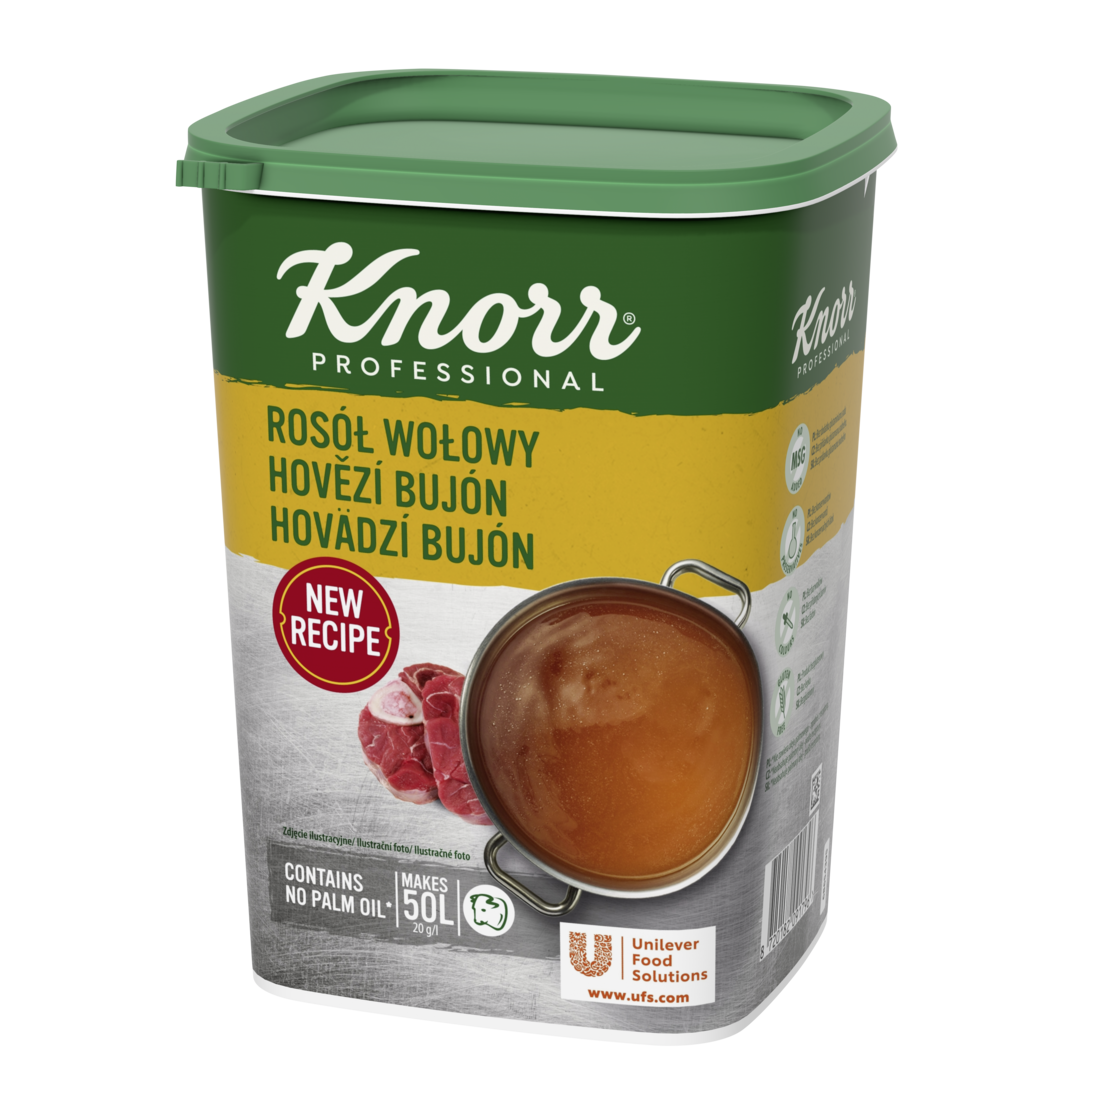 KNORR Professional Hovädzí bujón 1 kg - Knorr bujóny dodávajú chuť, farbu a správnu konzistenciu polievkam a jedlám.